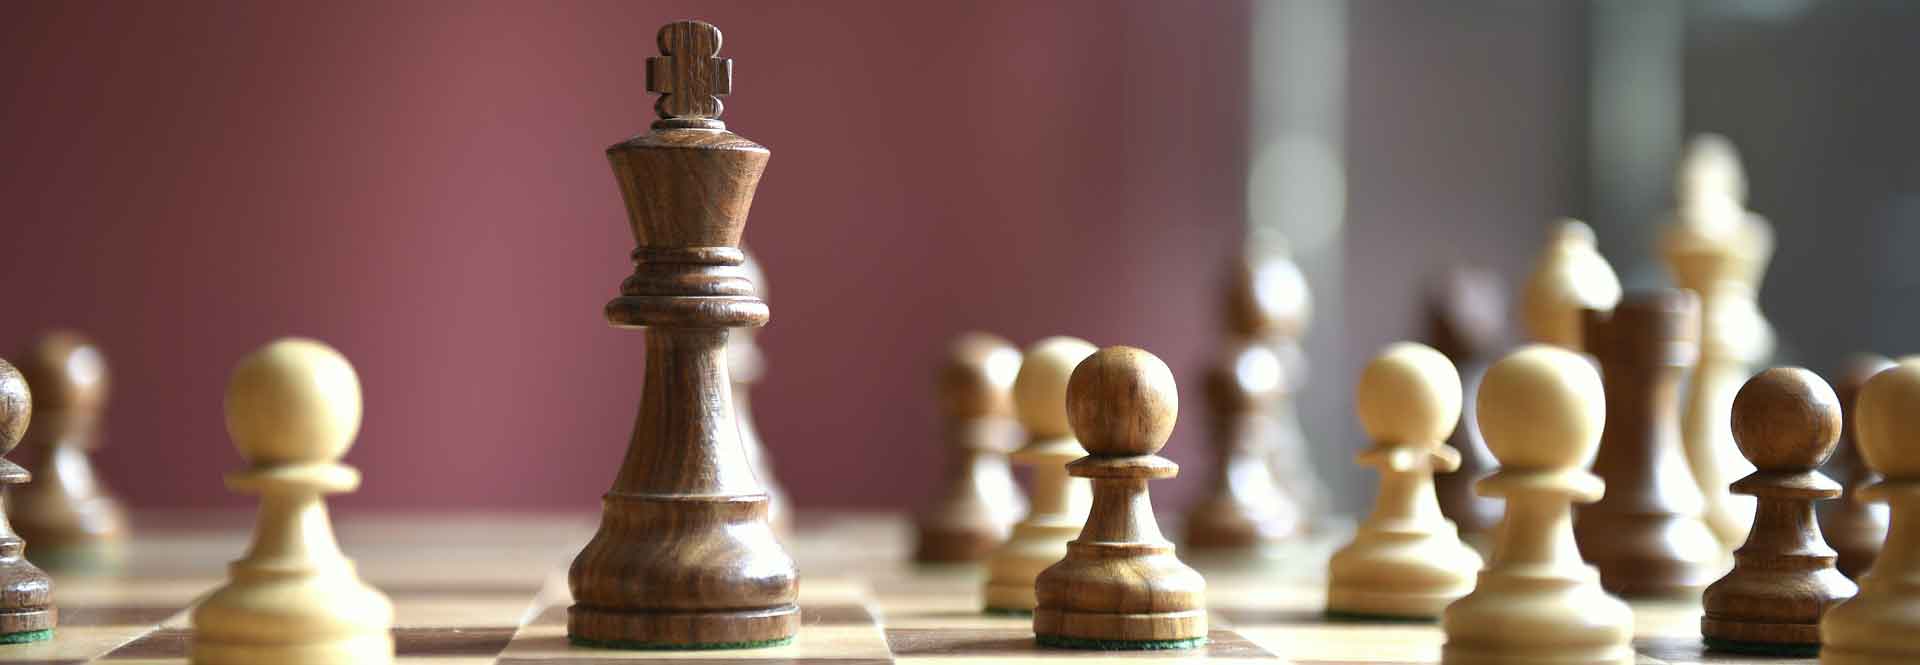 schaken en andere spelen